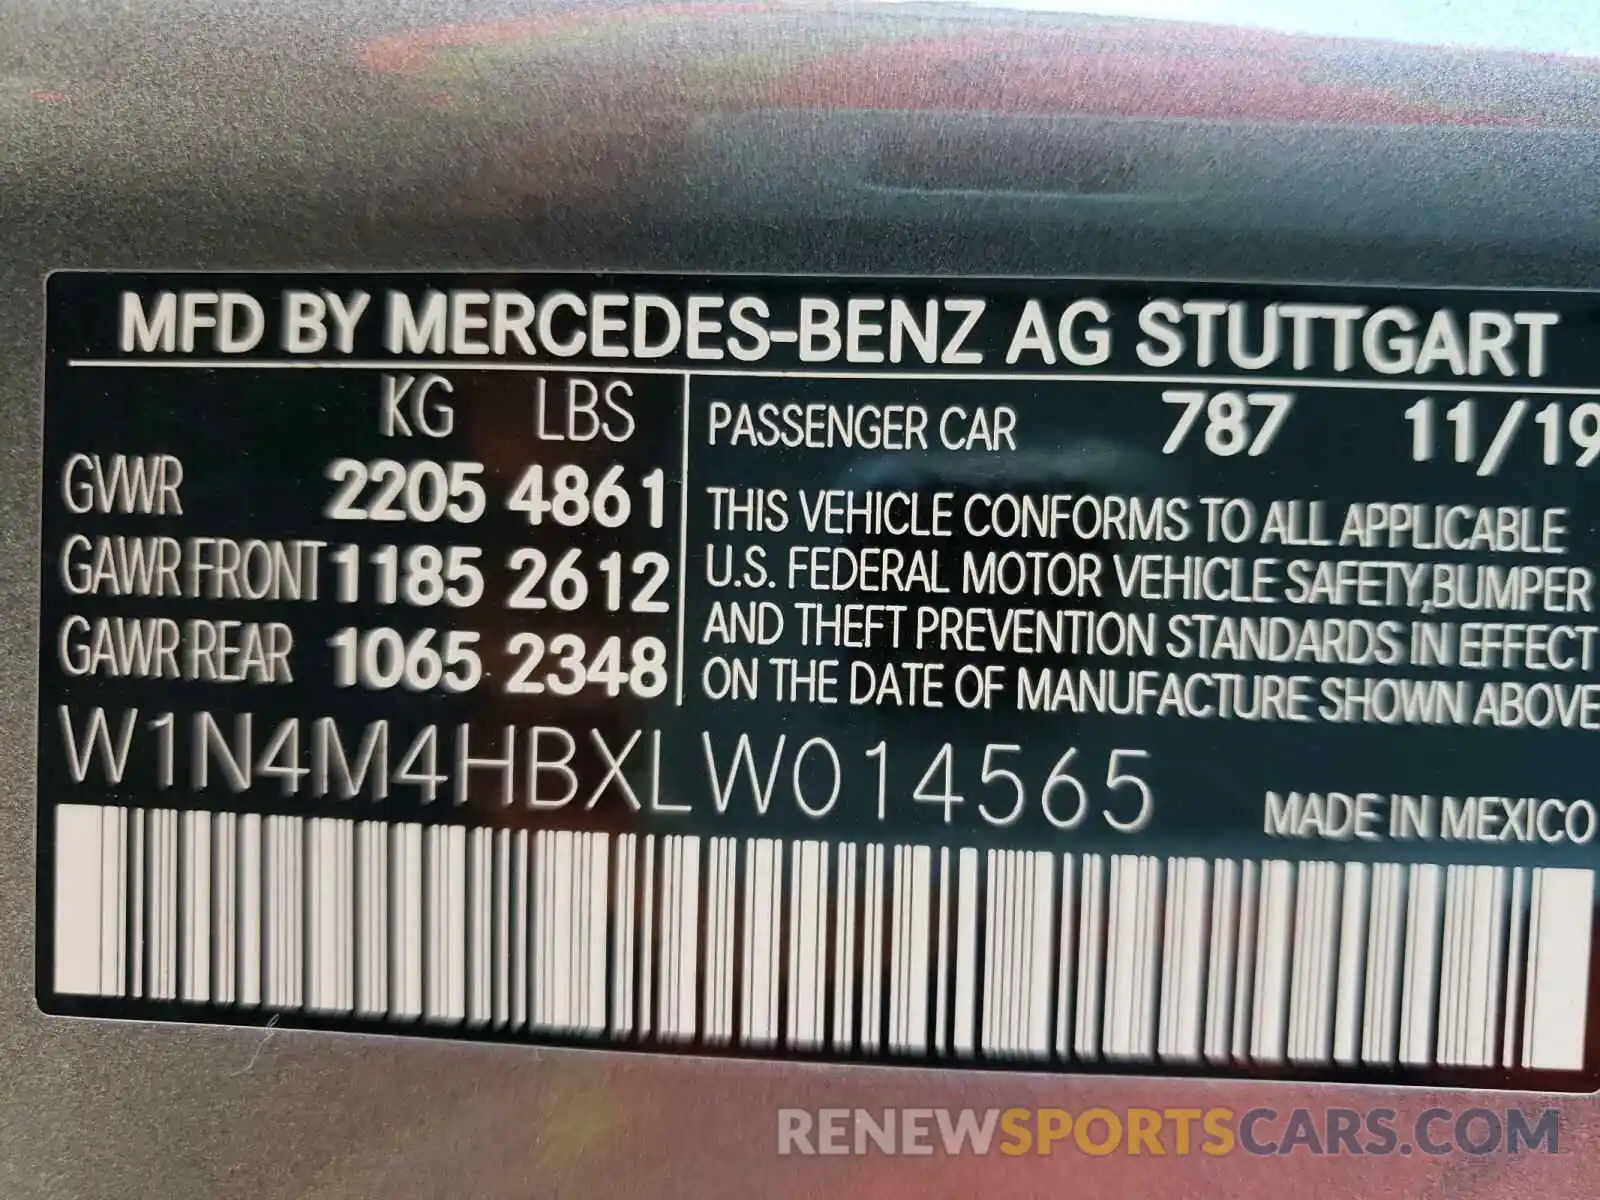 10 Photograph of a damaged car W1N4M4HBXLW014565 MERCEDES-BENZ G CLASS 2020